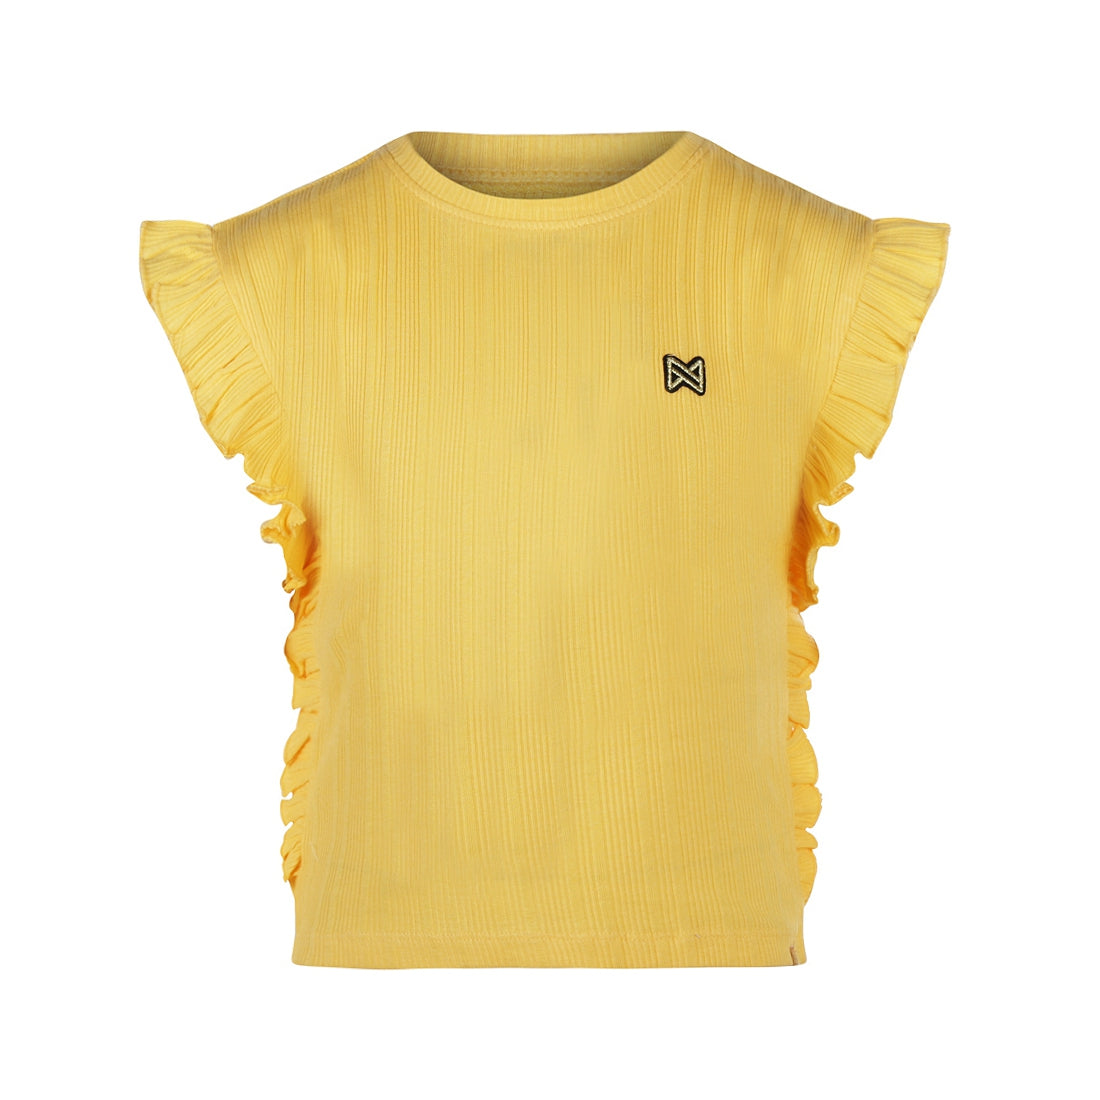 Meisjes T-shirt ss van Koko Noko in de kleur Yellow in maat 128.